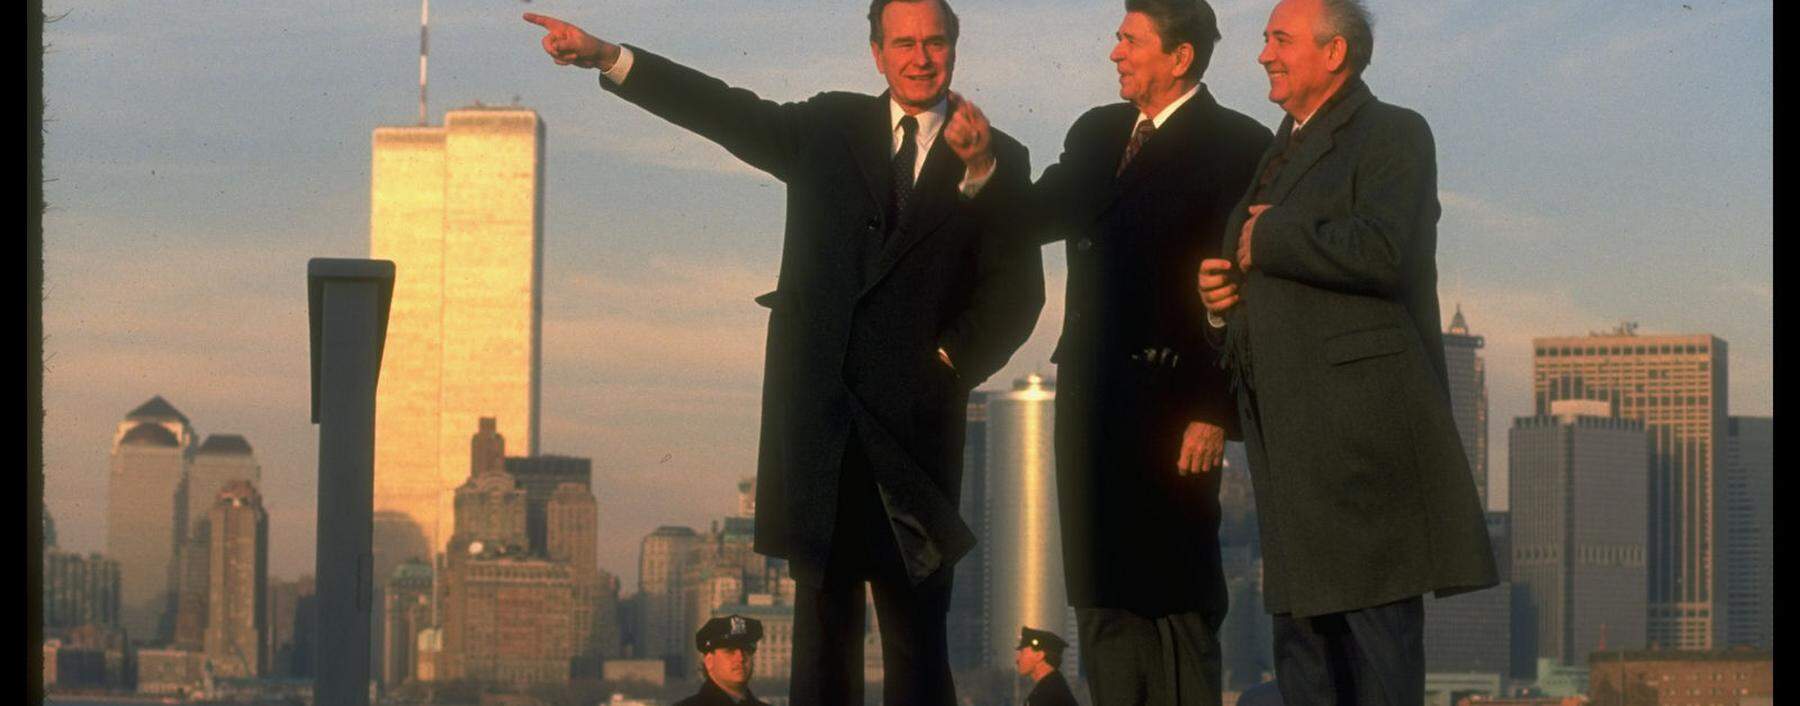 Ade, Kalter Krieg! George Bush, Ronald Reagan und Michail Gorbatschow vor der inzwischen historischen Kulisse von New York.